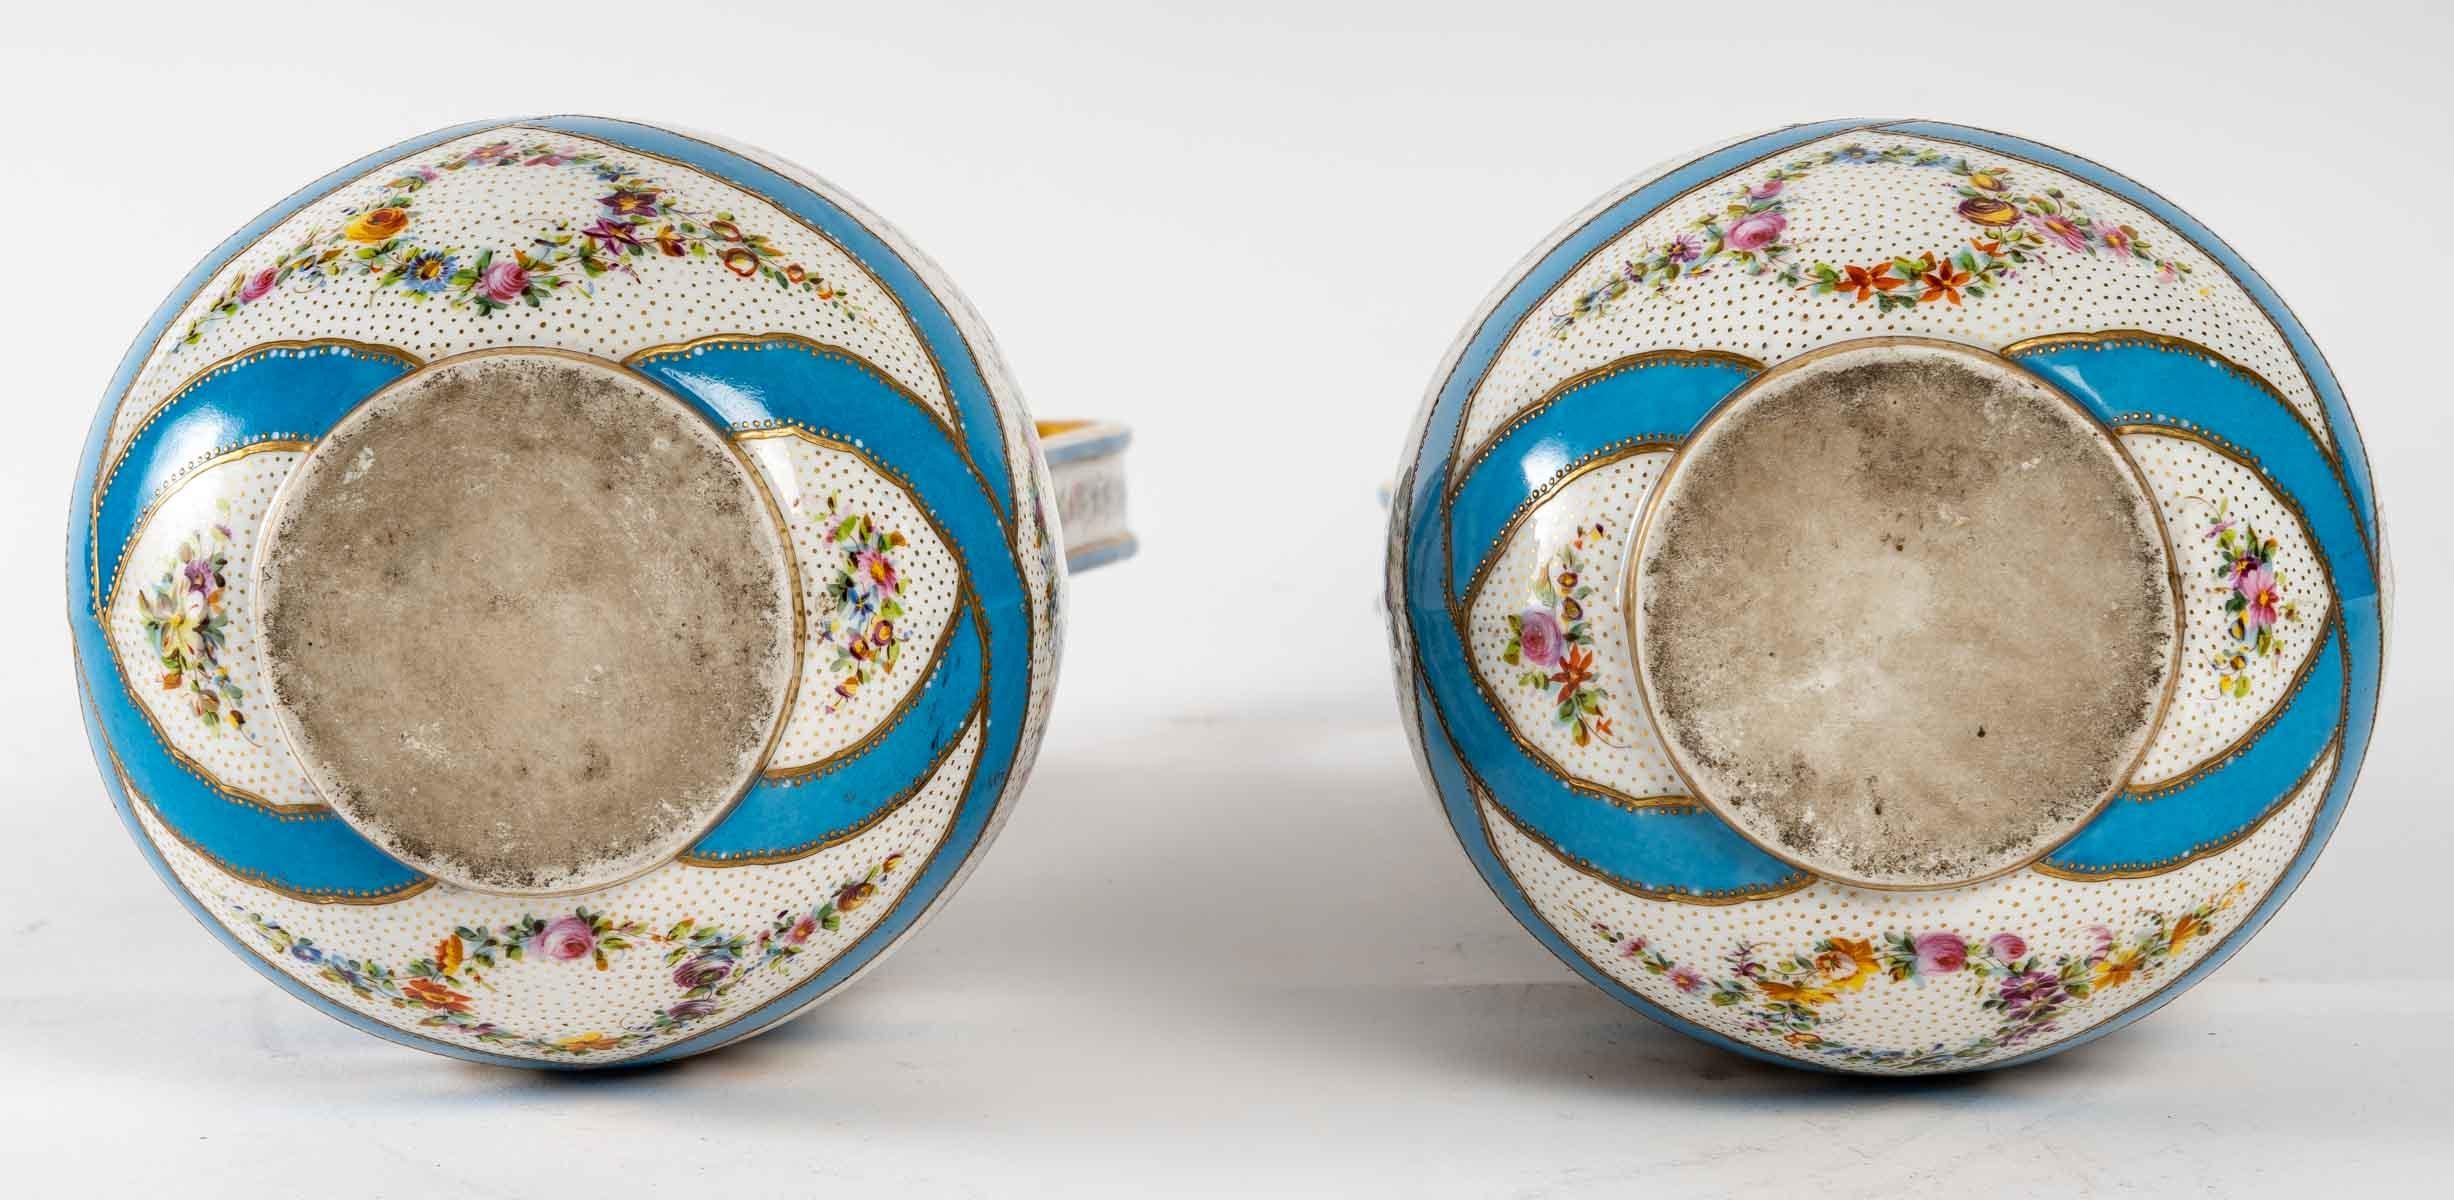 A pair of vases, Porcelain of Paris, early 19th century.
Measures: H: 33 cm, W: 17 cm, D: 15 cm.